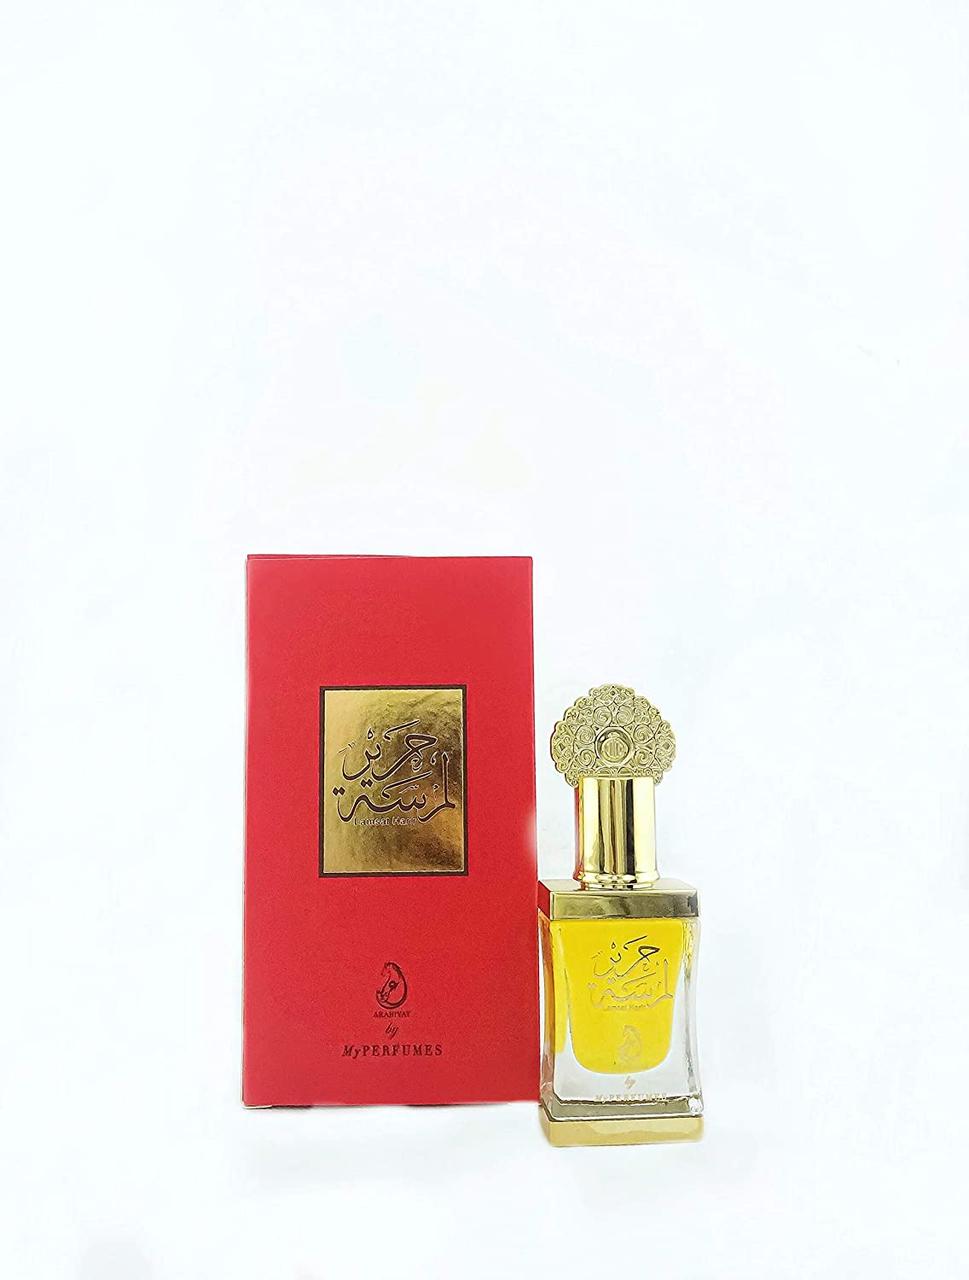 Арабські олійні унісекс-парфуми без спирту Lamsat Harir 12 ml by My Perfumes 12 мл квітково-фруктовий аромат